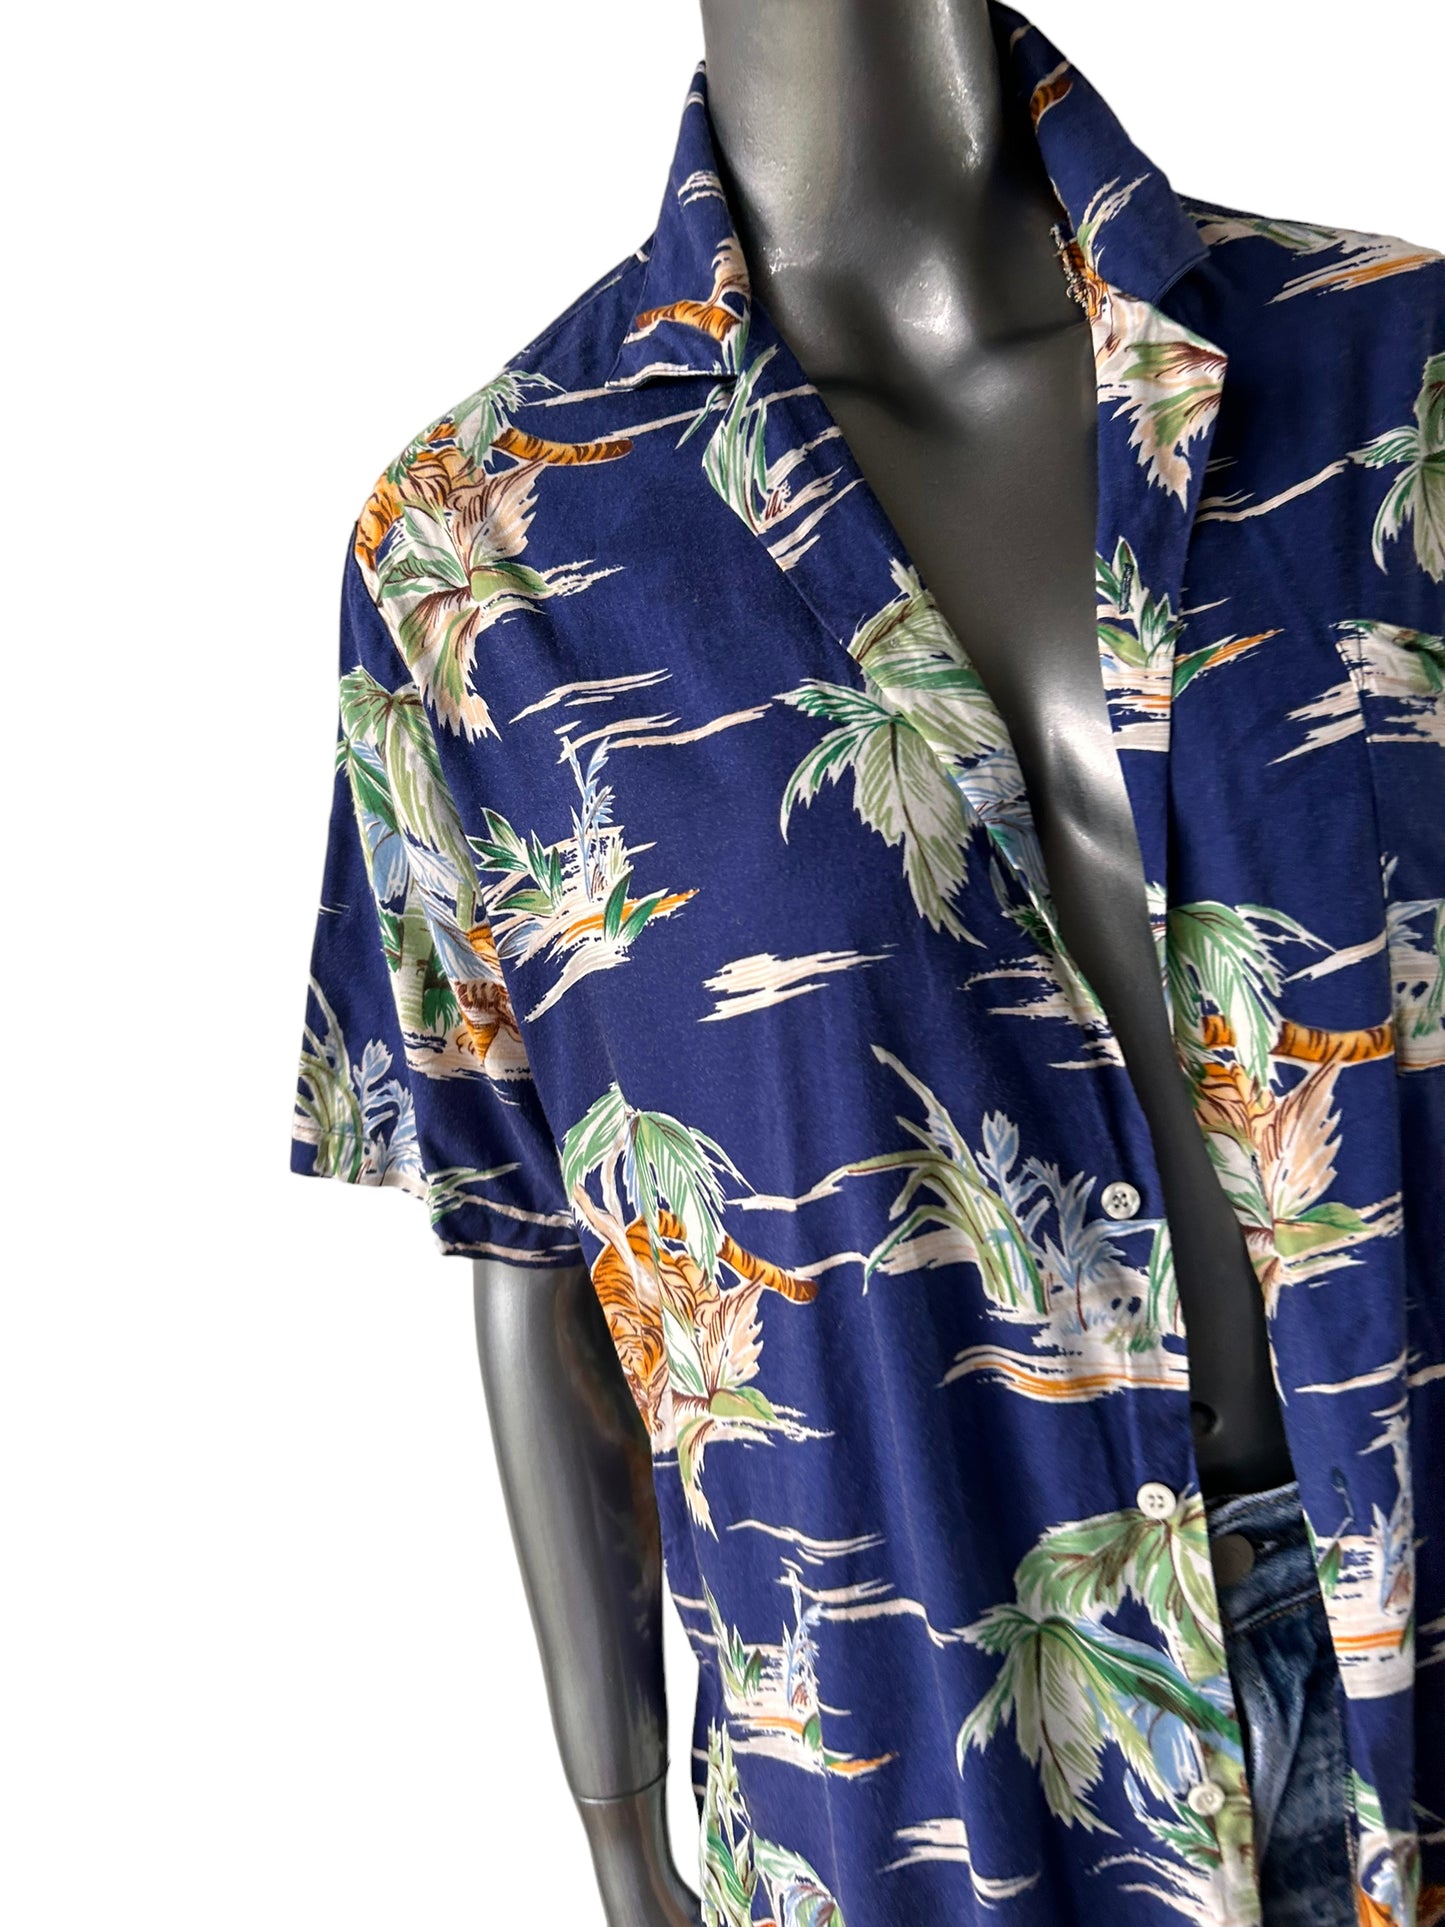 Vintage 1980s Hawaiian Shirt SALE